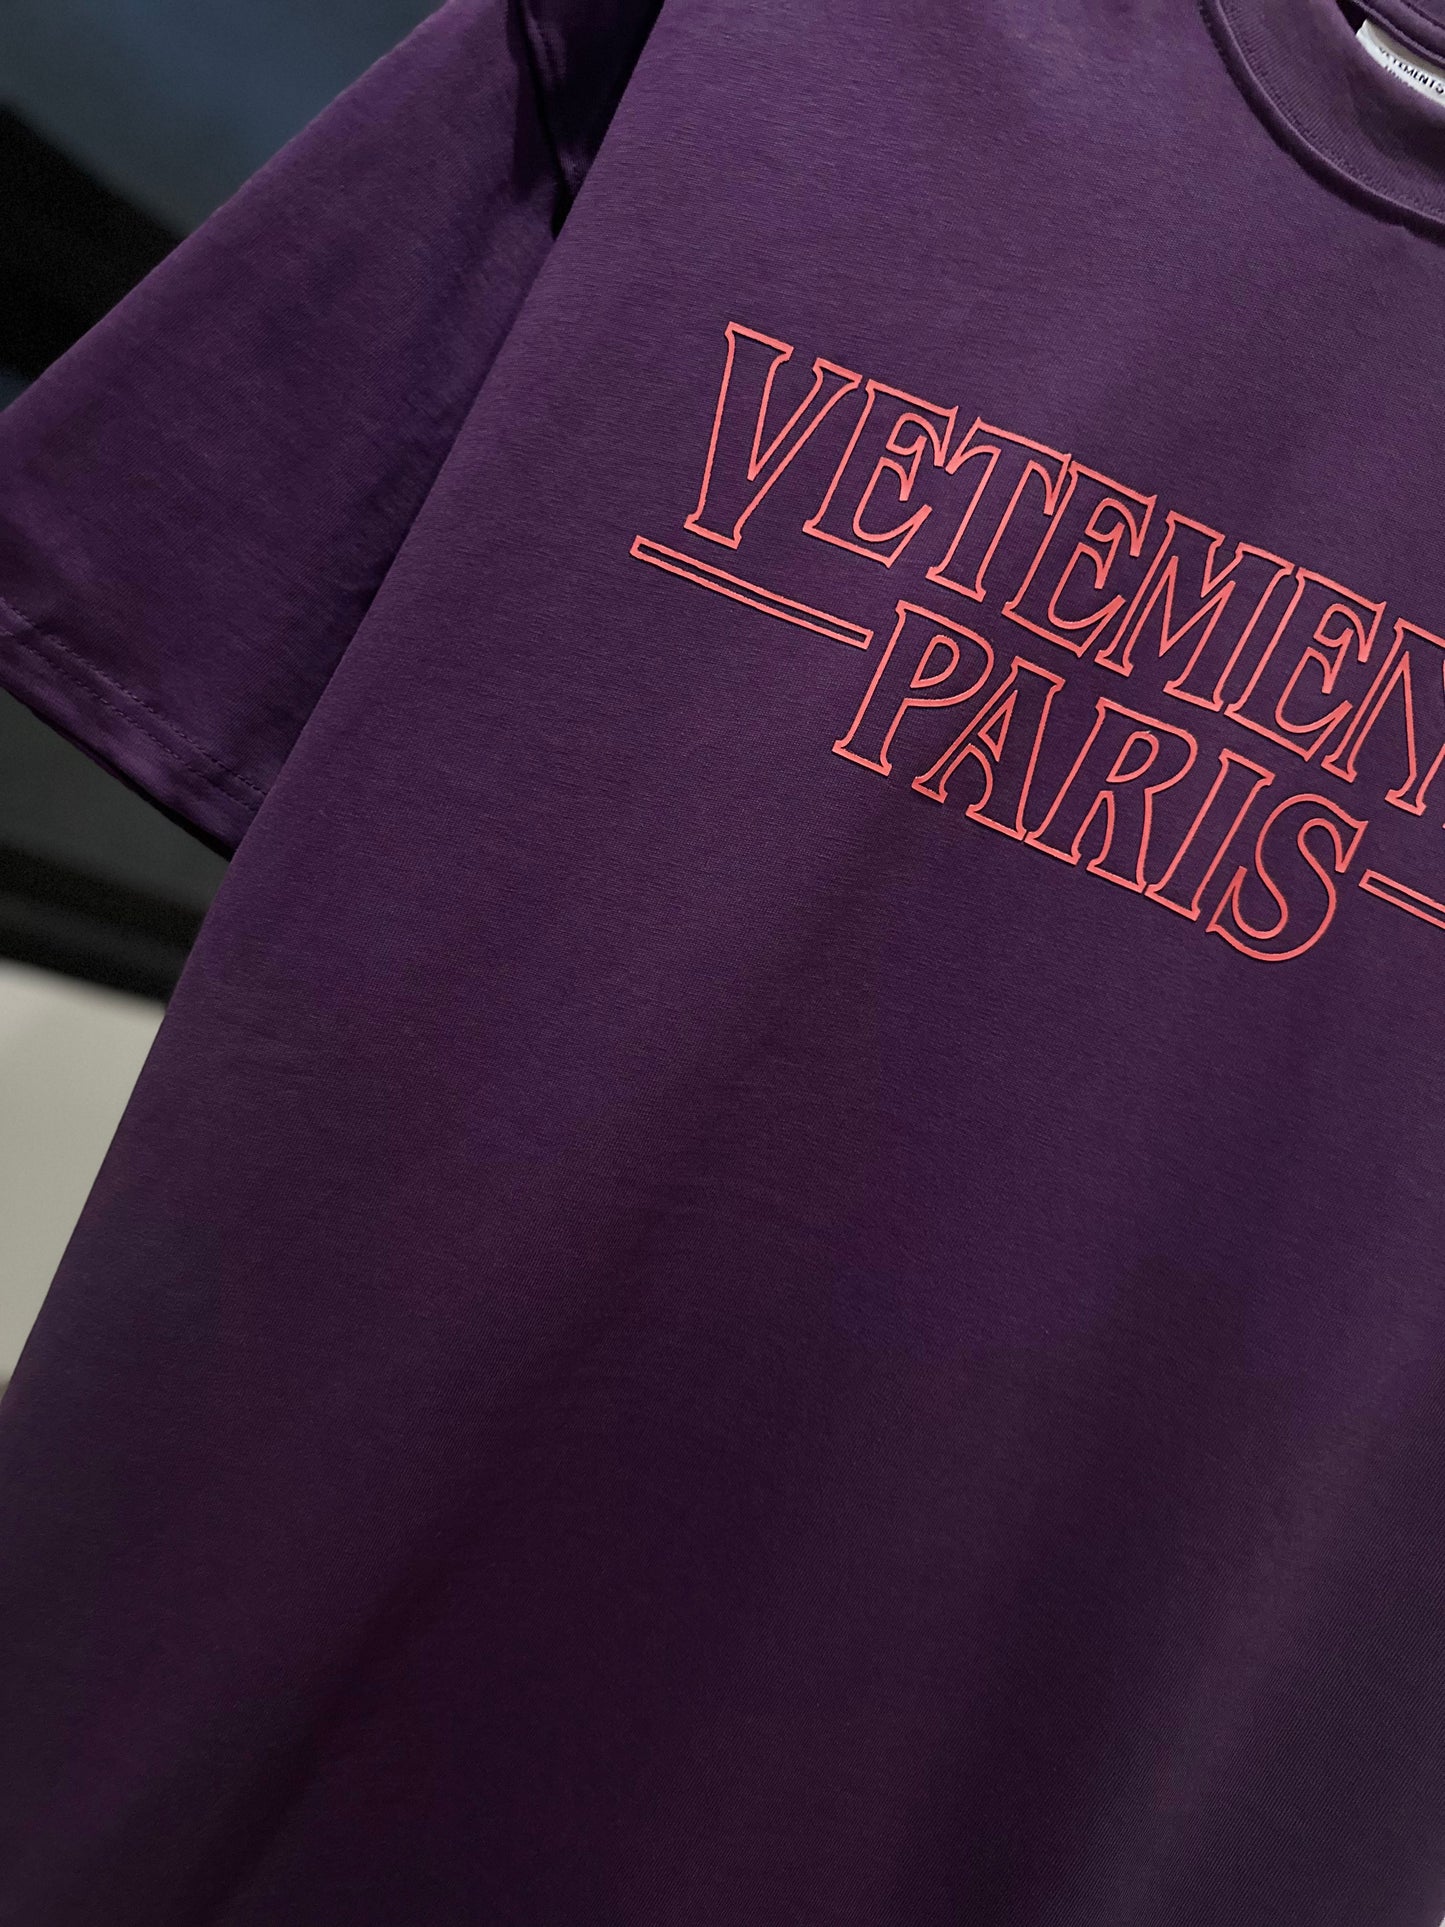 Vetements Paris Oversized T-Shirt